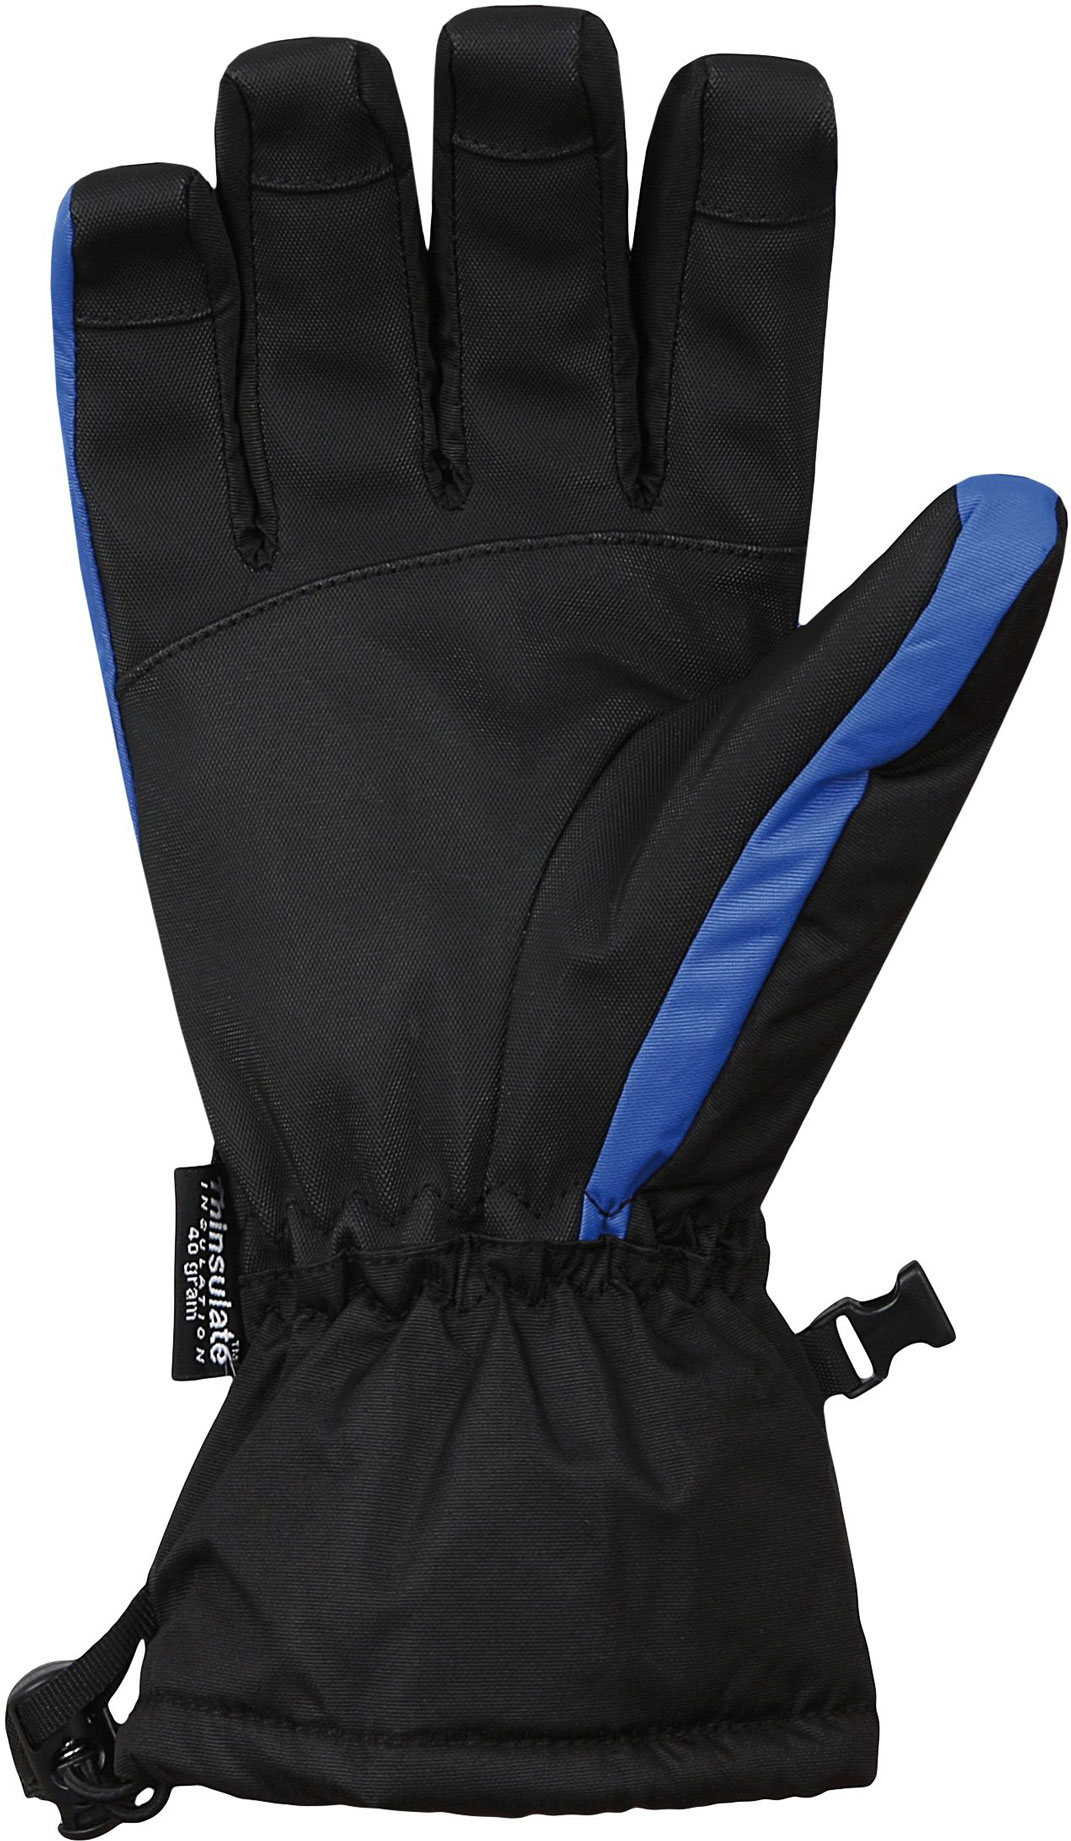 Men's membrane gloves